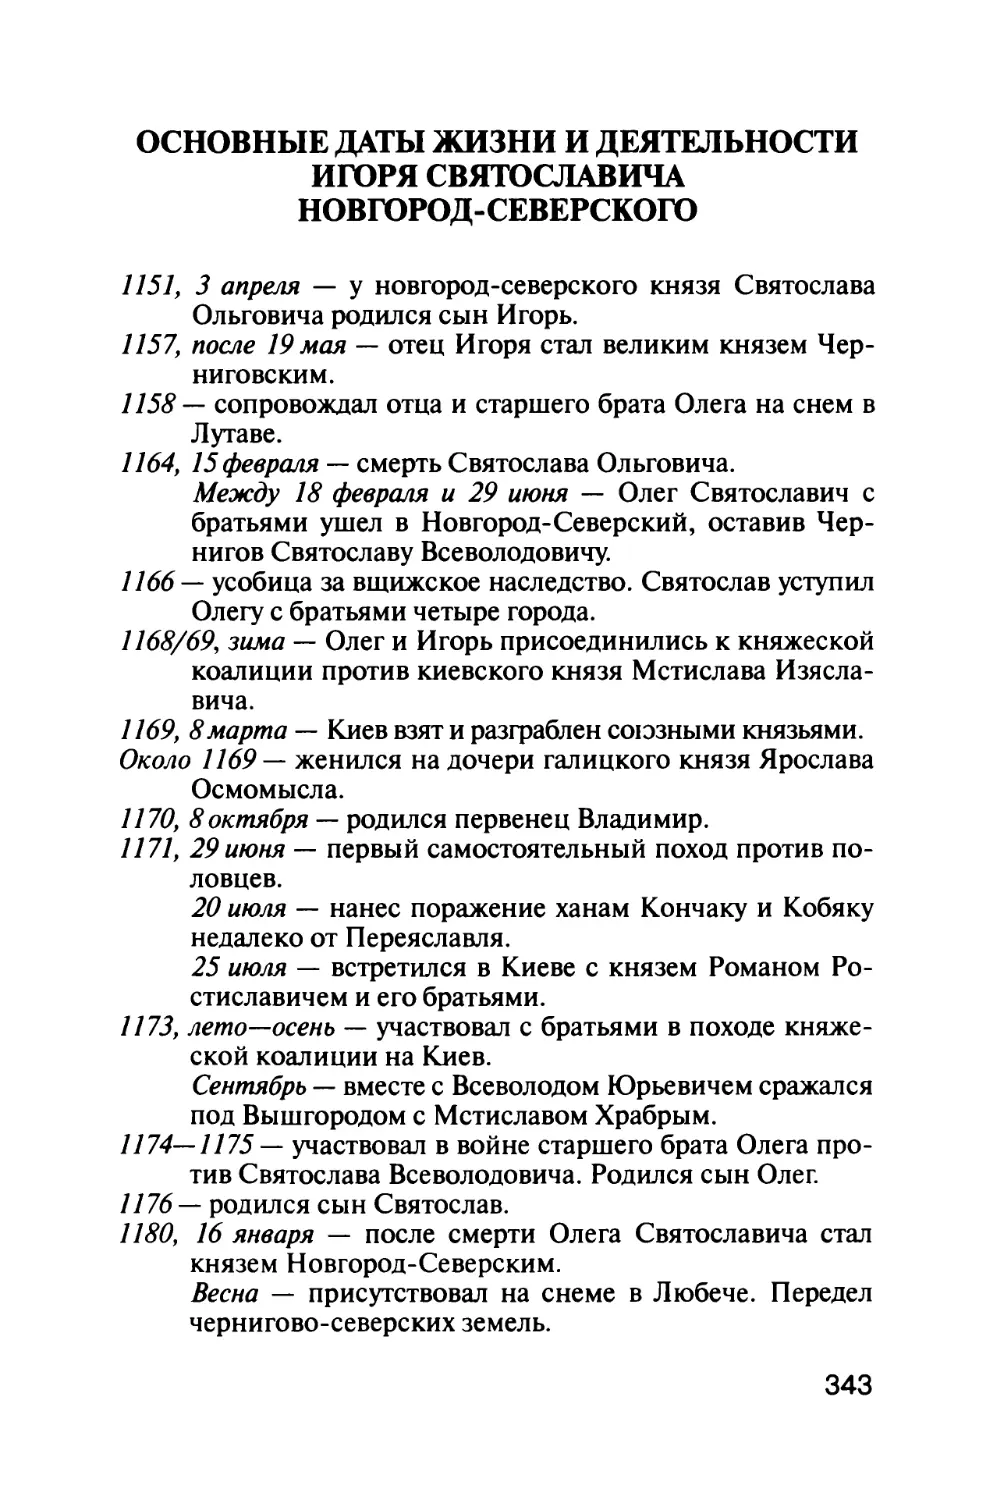 Основные  даты  жизни  и  деятельности Игоря  Святославича  Новгород-Северского